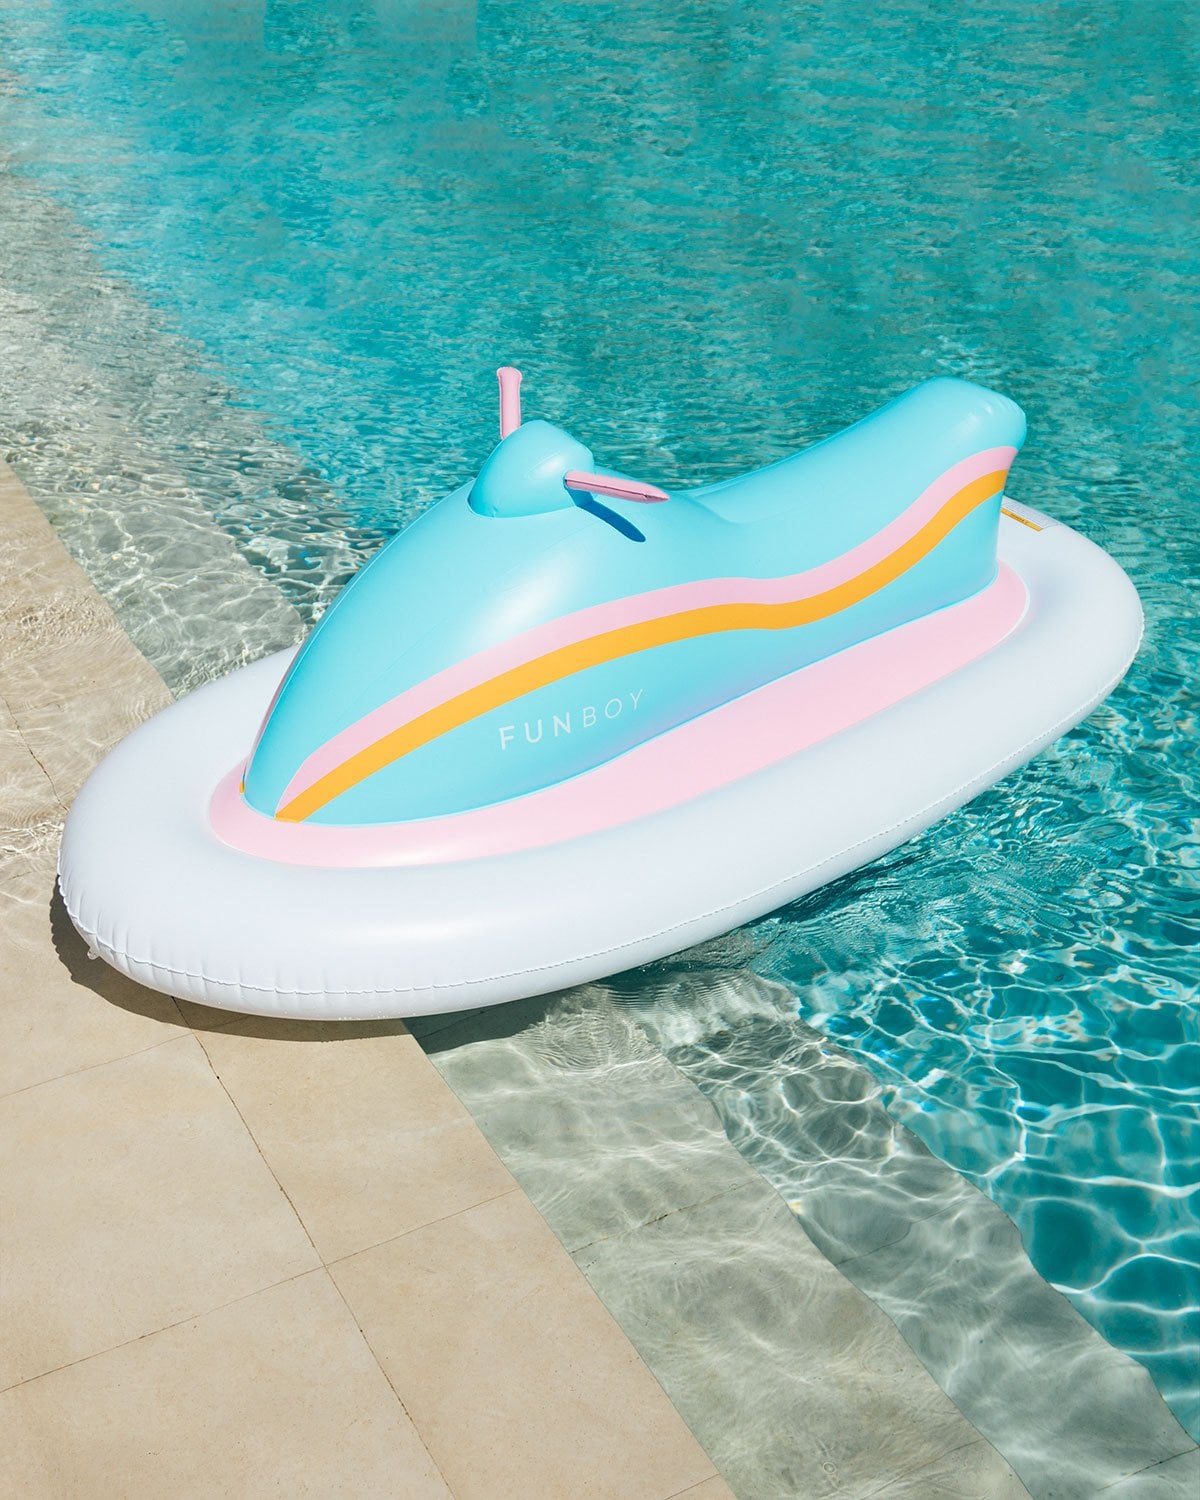 new pool floats